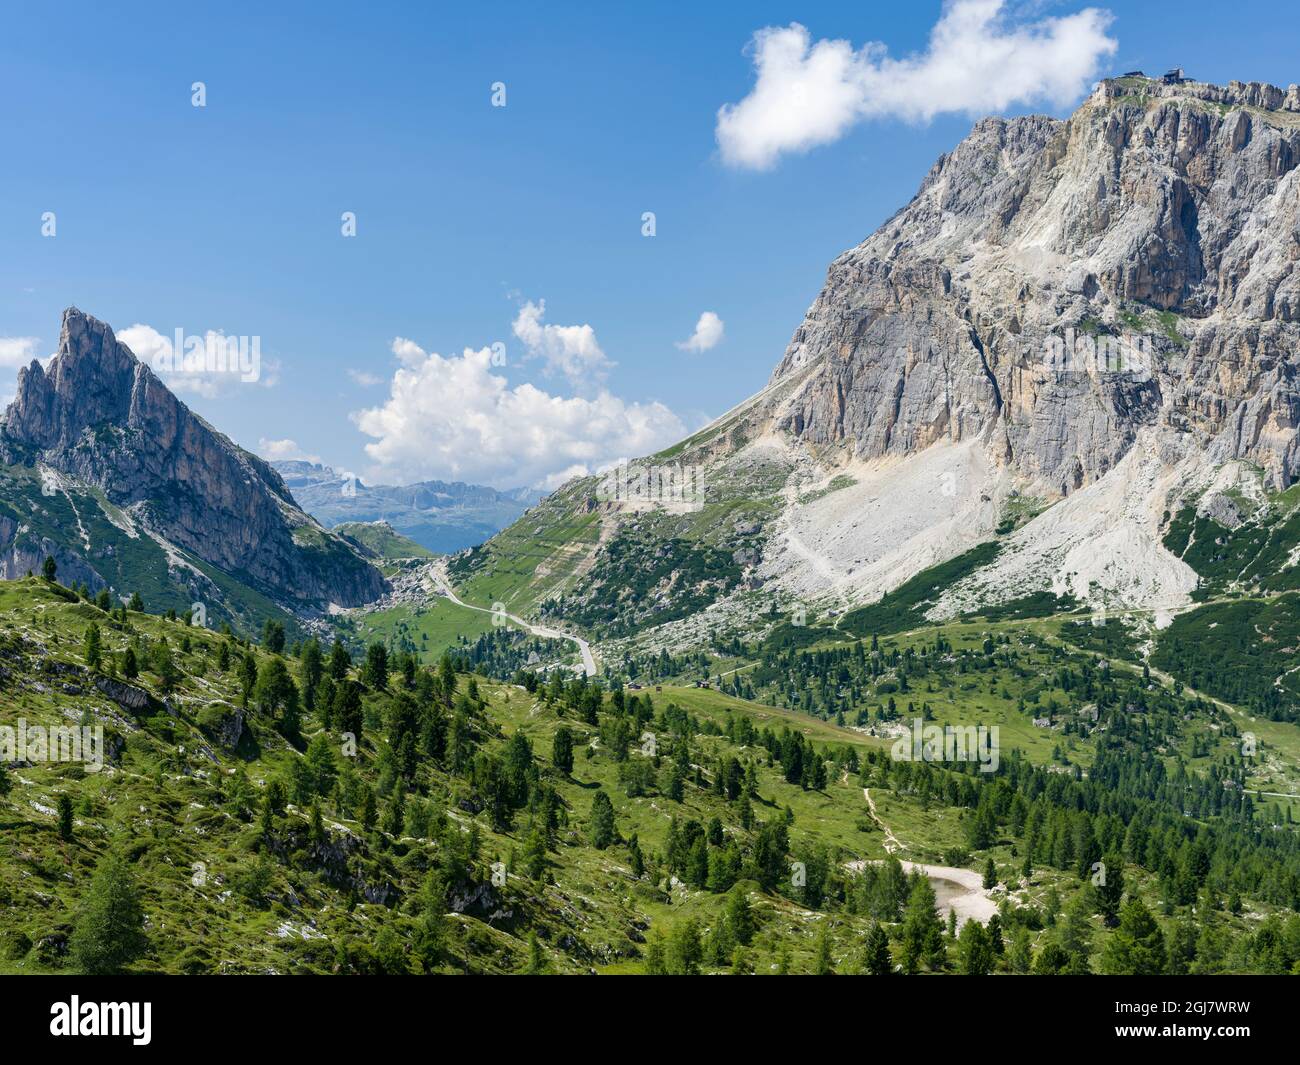 Dolomites à Passo Falzarego, Lagazuoi, Fanes et stria dans le parc naturel Fanes Sennes Prags, qui fait partie du site du patrimoine mondial de l'UNESCO les Dolomites. JE Banque D'Images